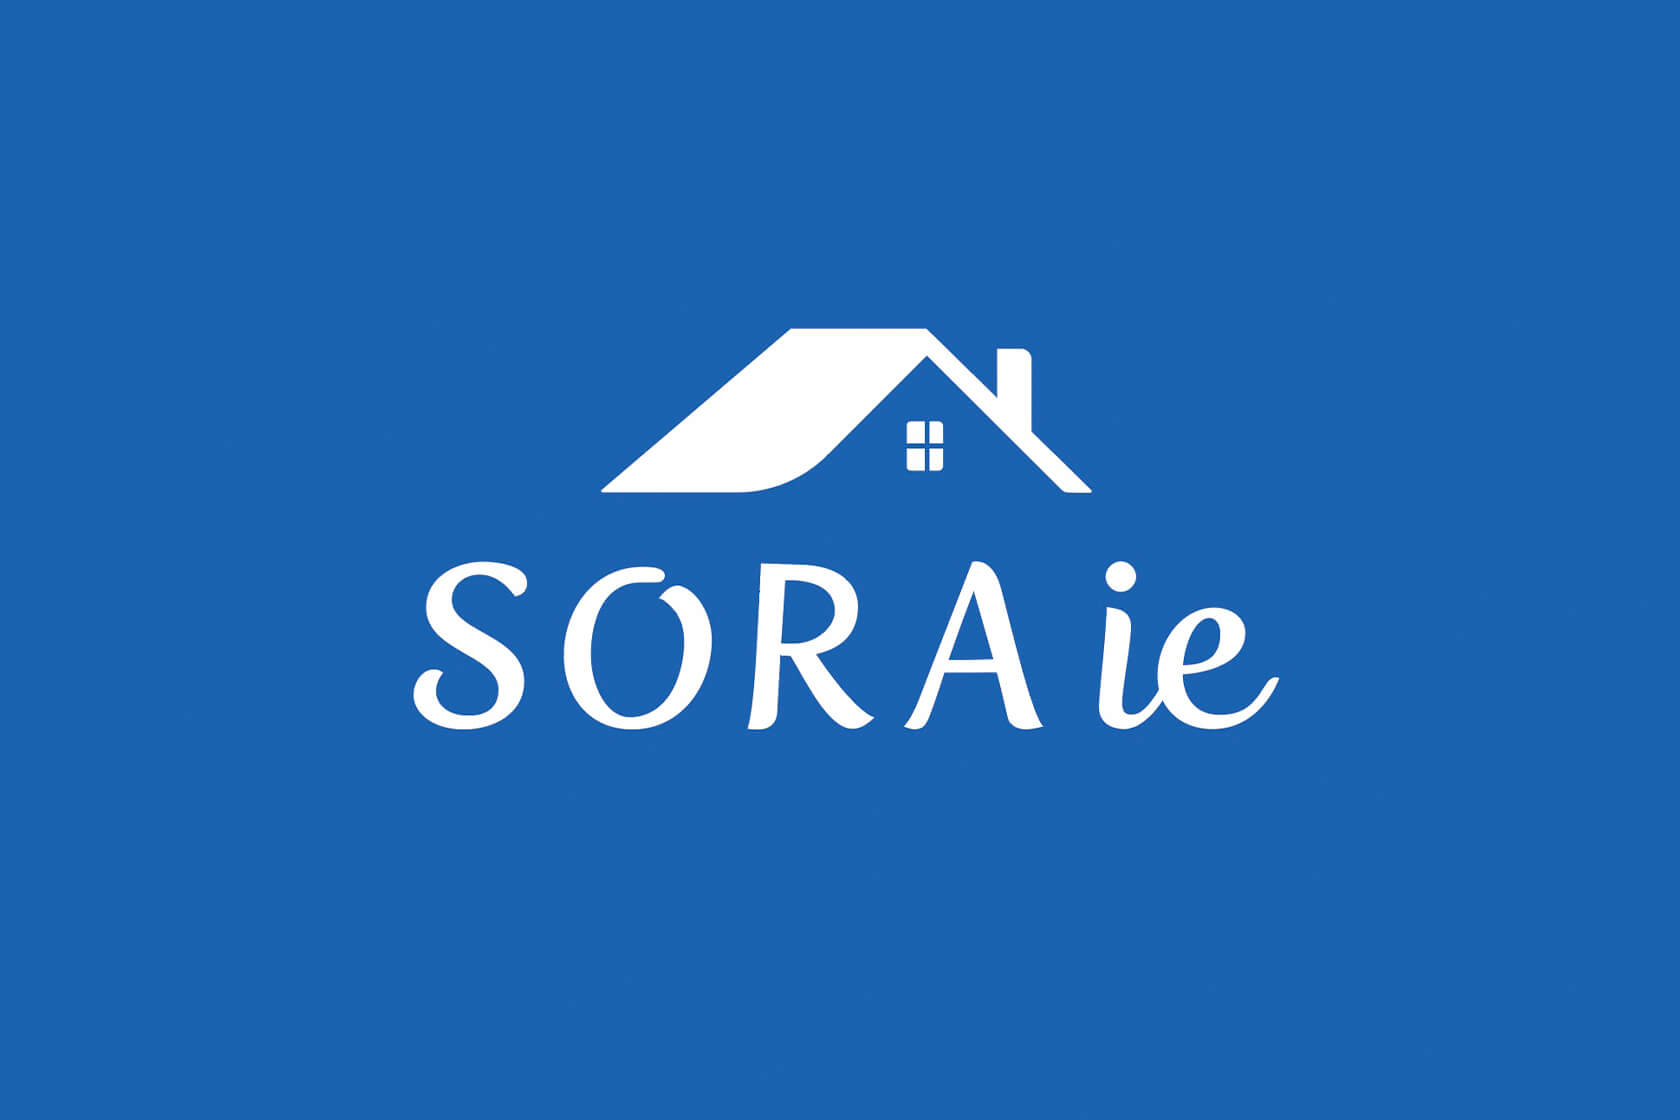 株式会社 SORAie / Webサイト・ロゴ・看板・パンフレット・名刺・広告